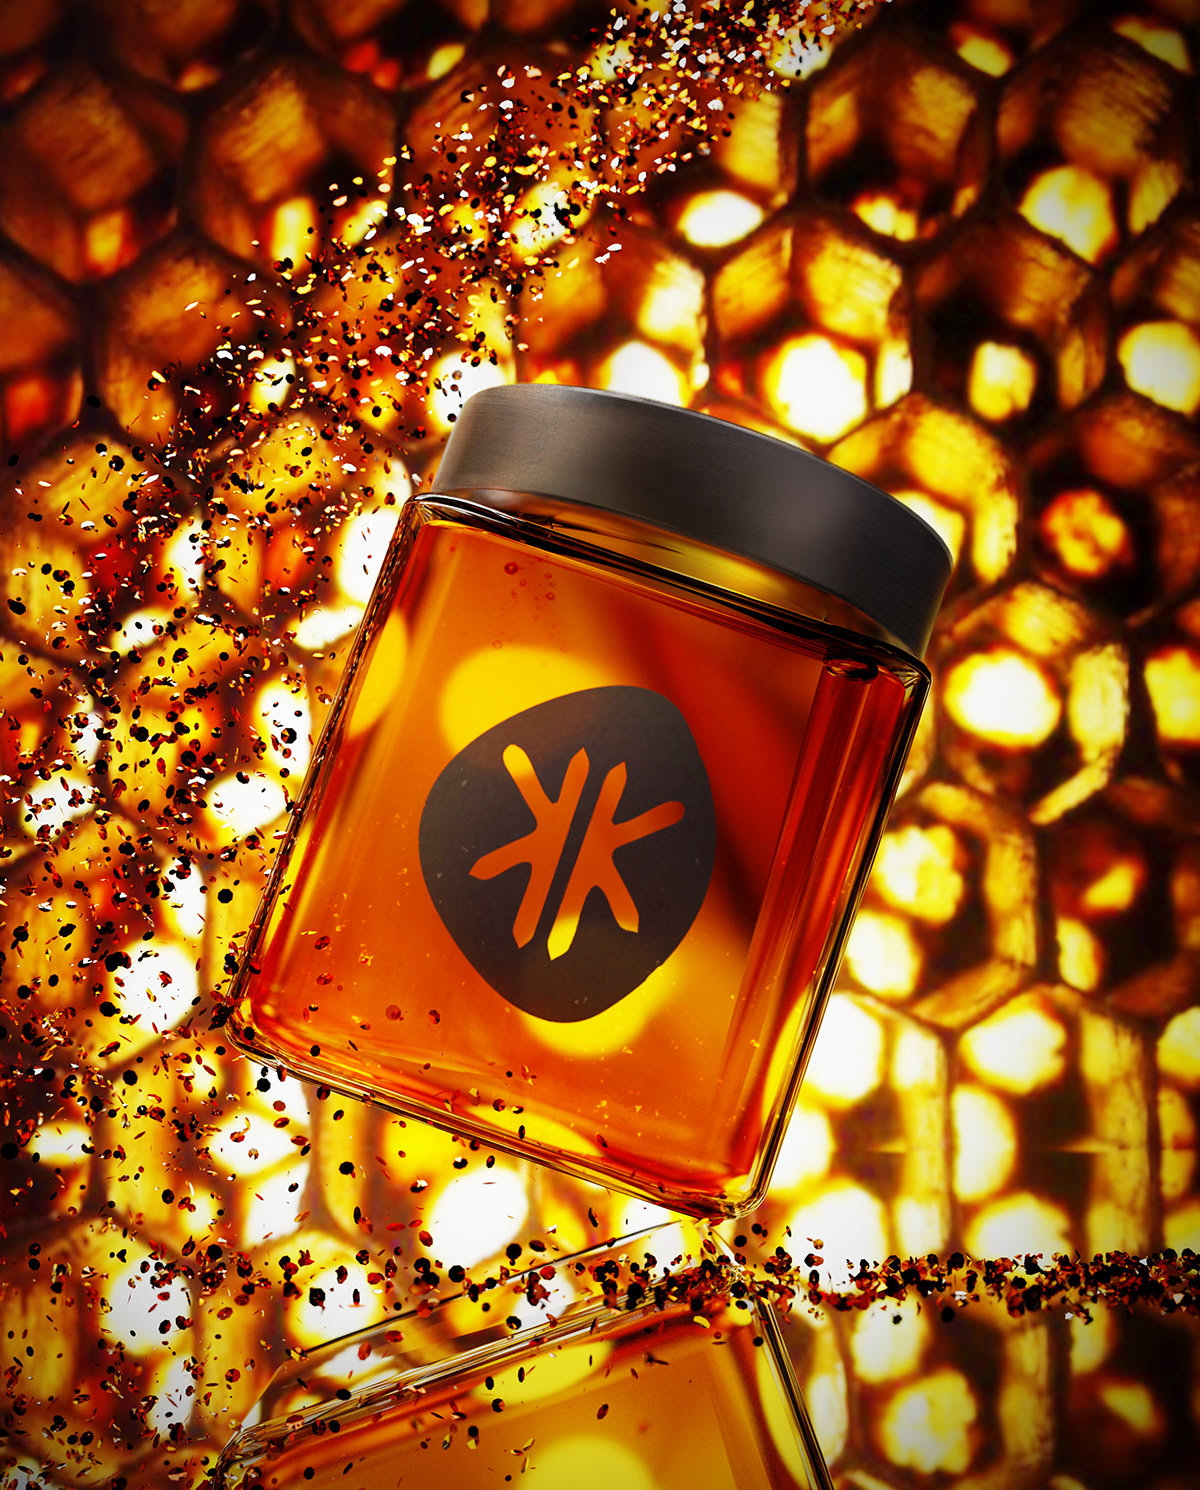 3D blender branding  glass honey jar UK